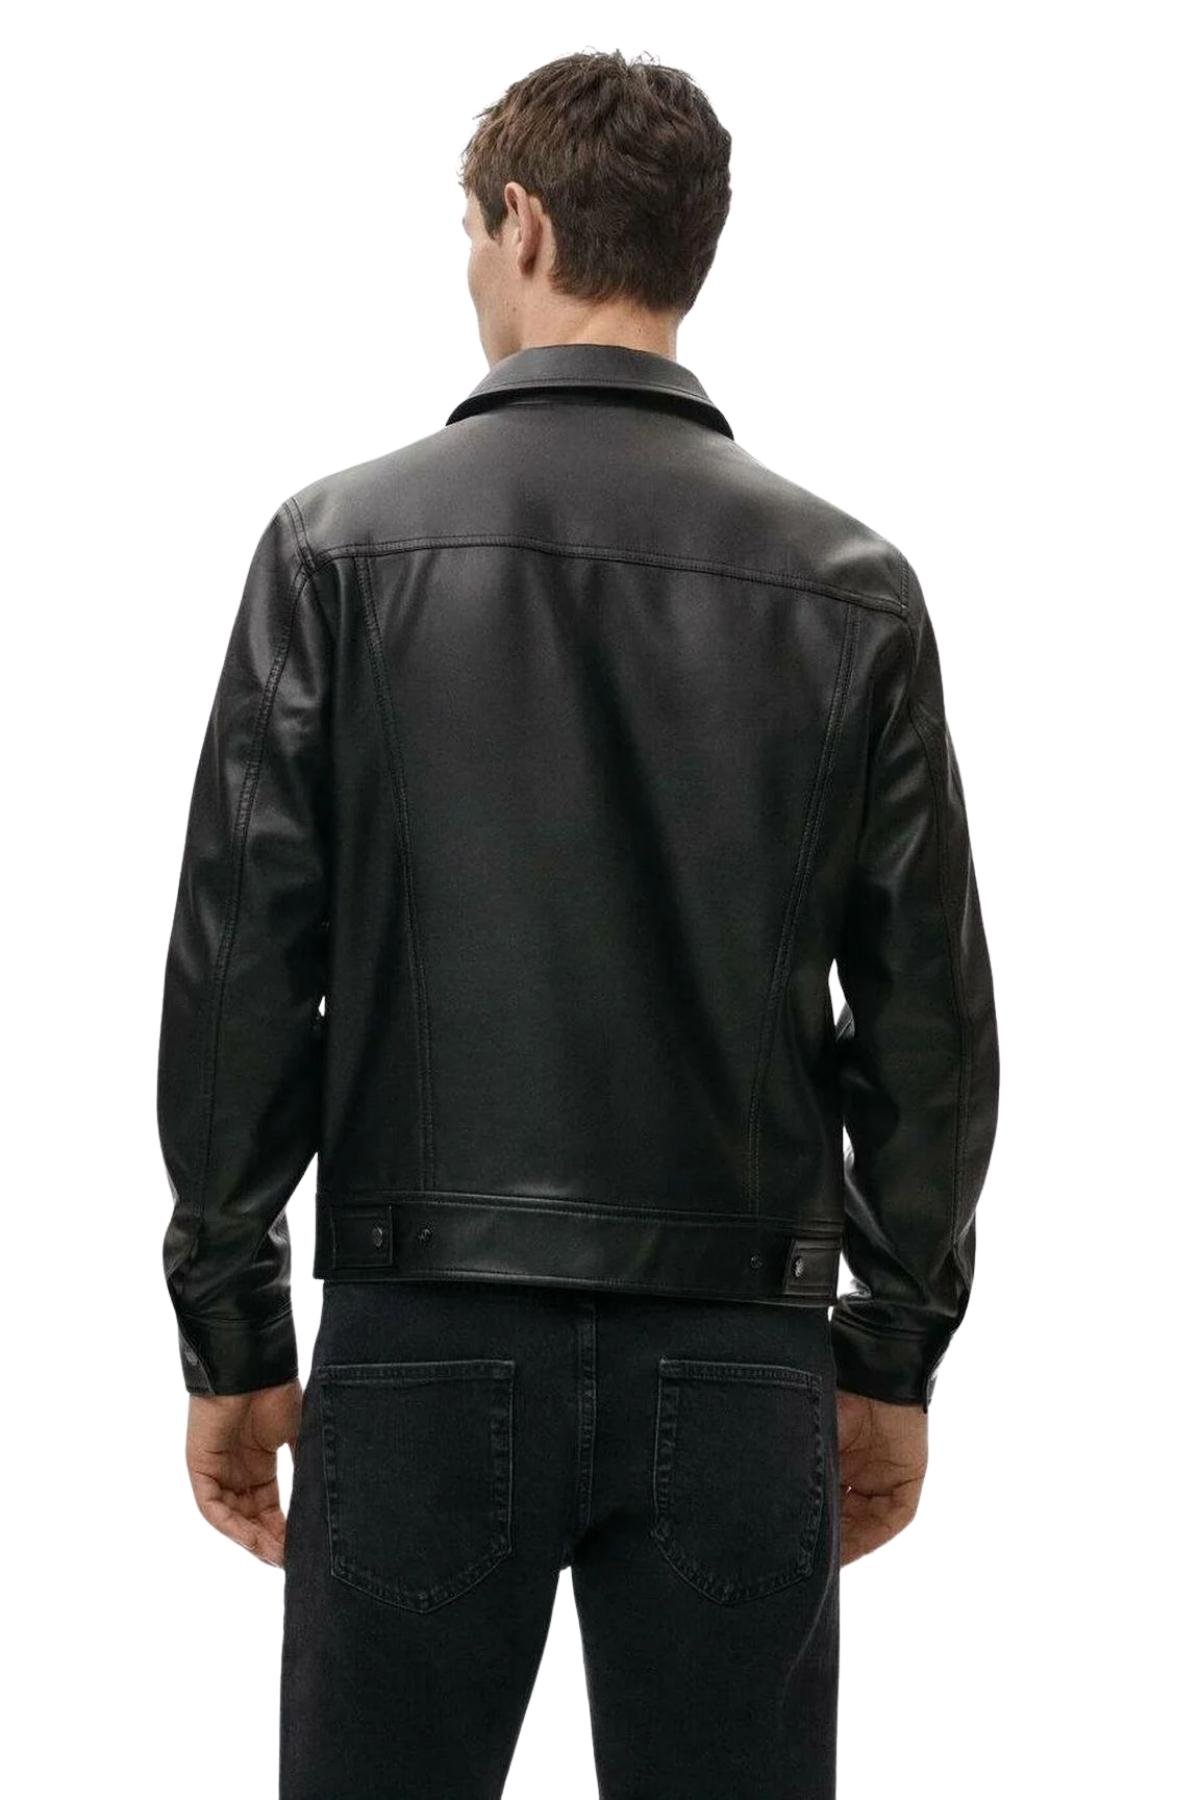 Mens Black Shirt Style Leather Jacket